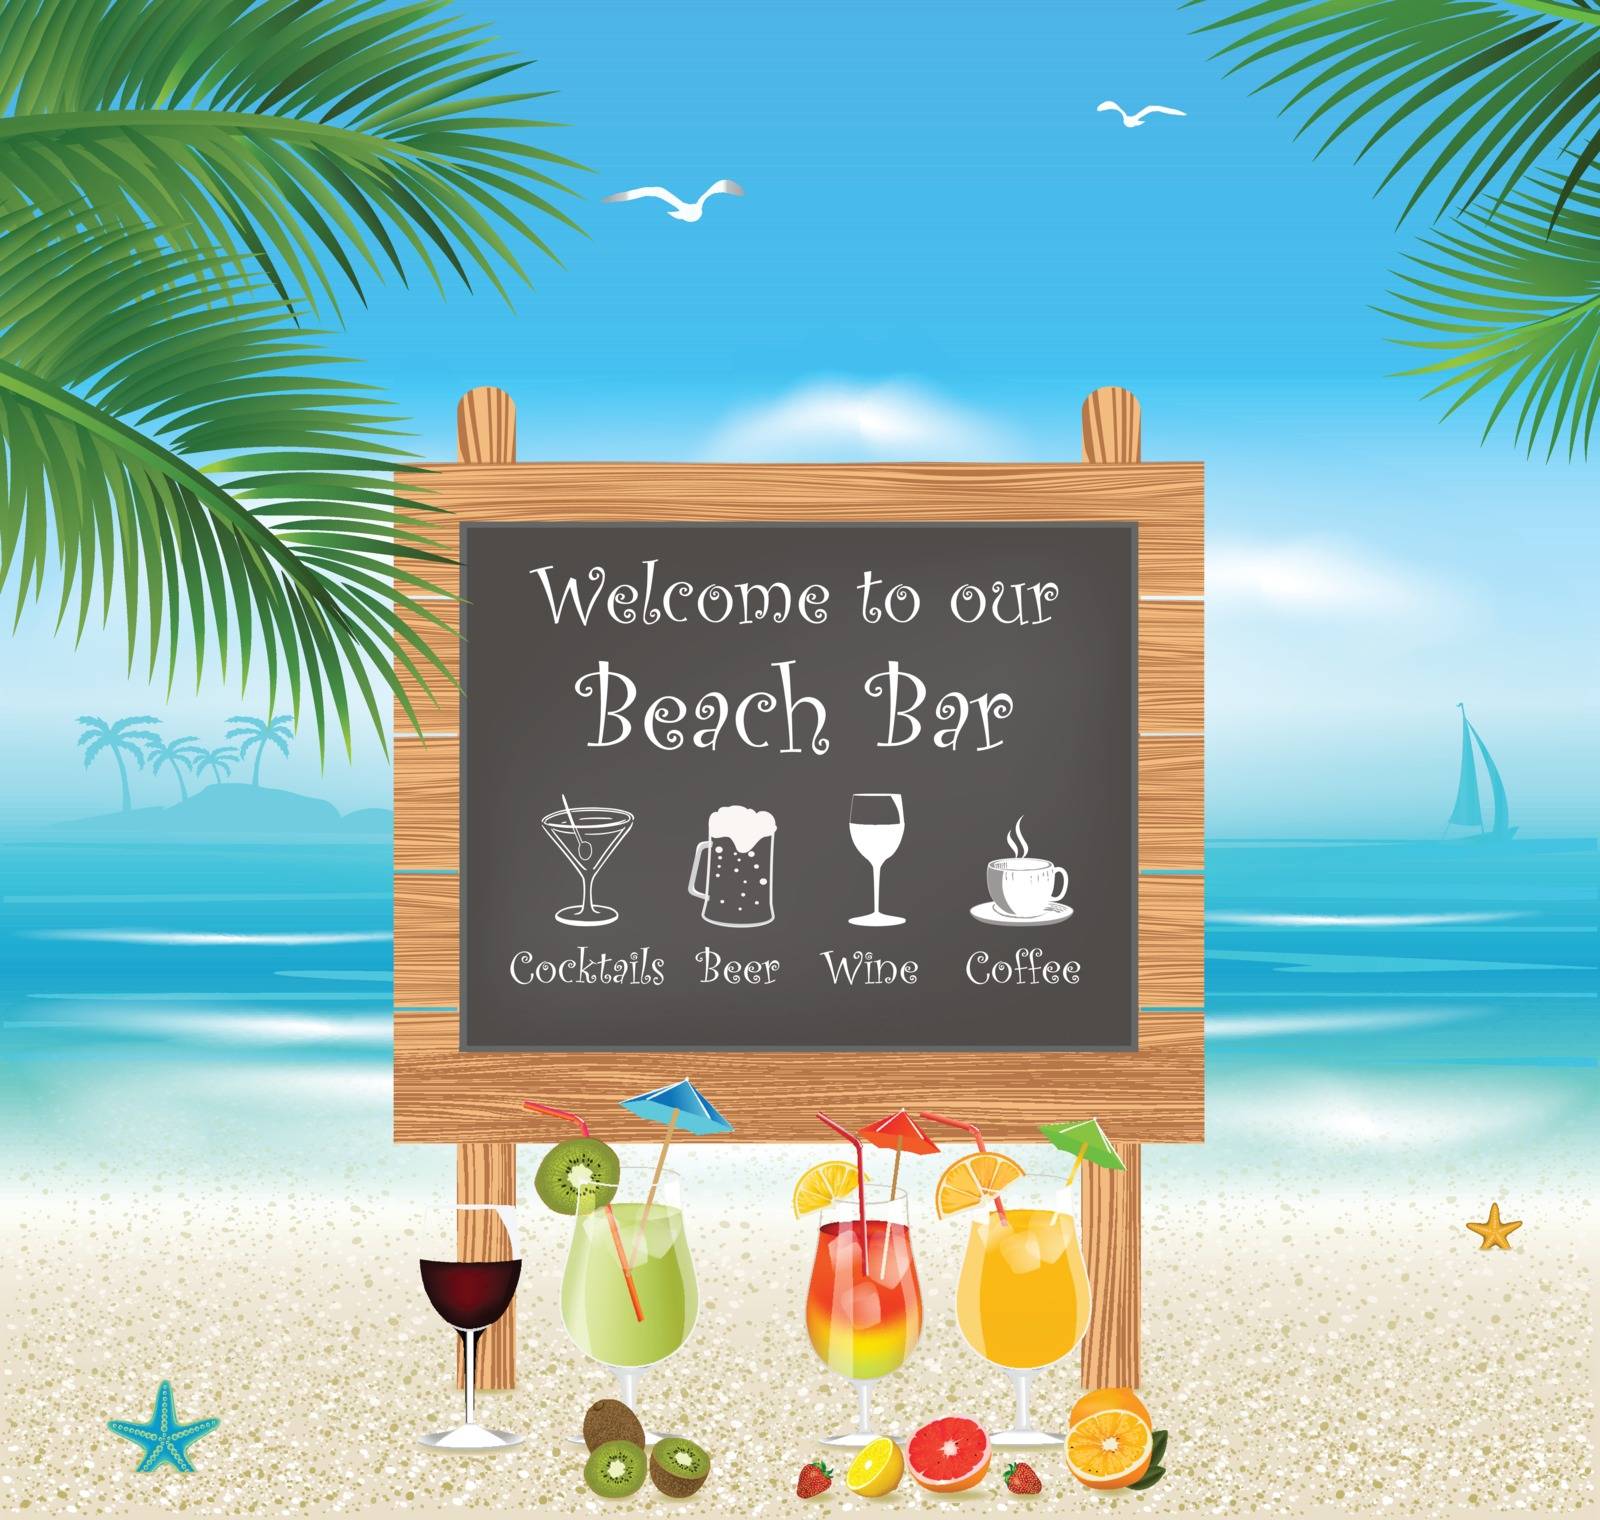 Tropical beach bar menu. Vacation and Tourism concept